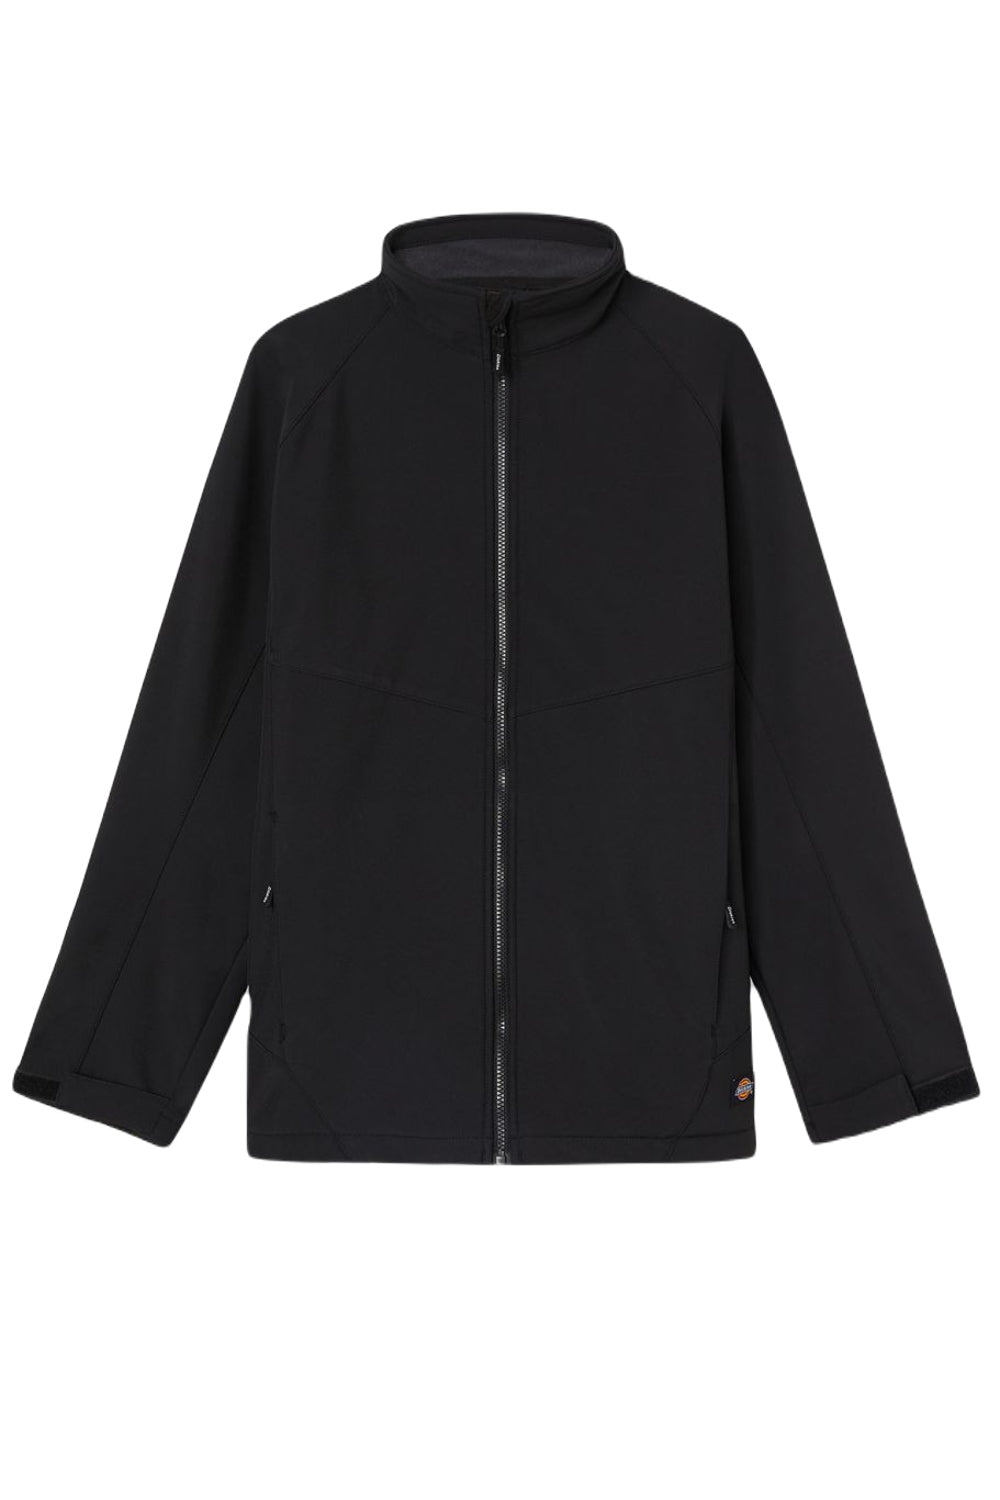 Dickies Softshell Waterproof Jacket in Black